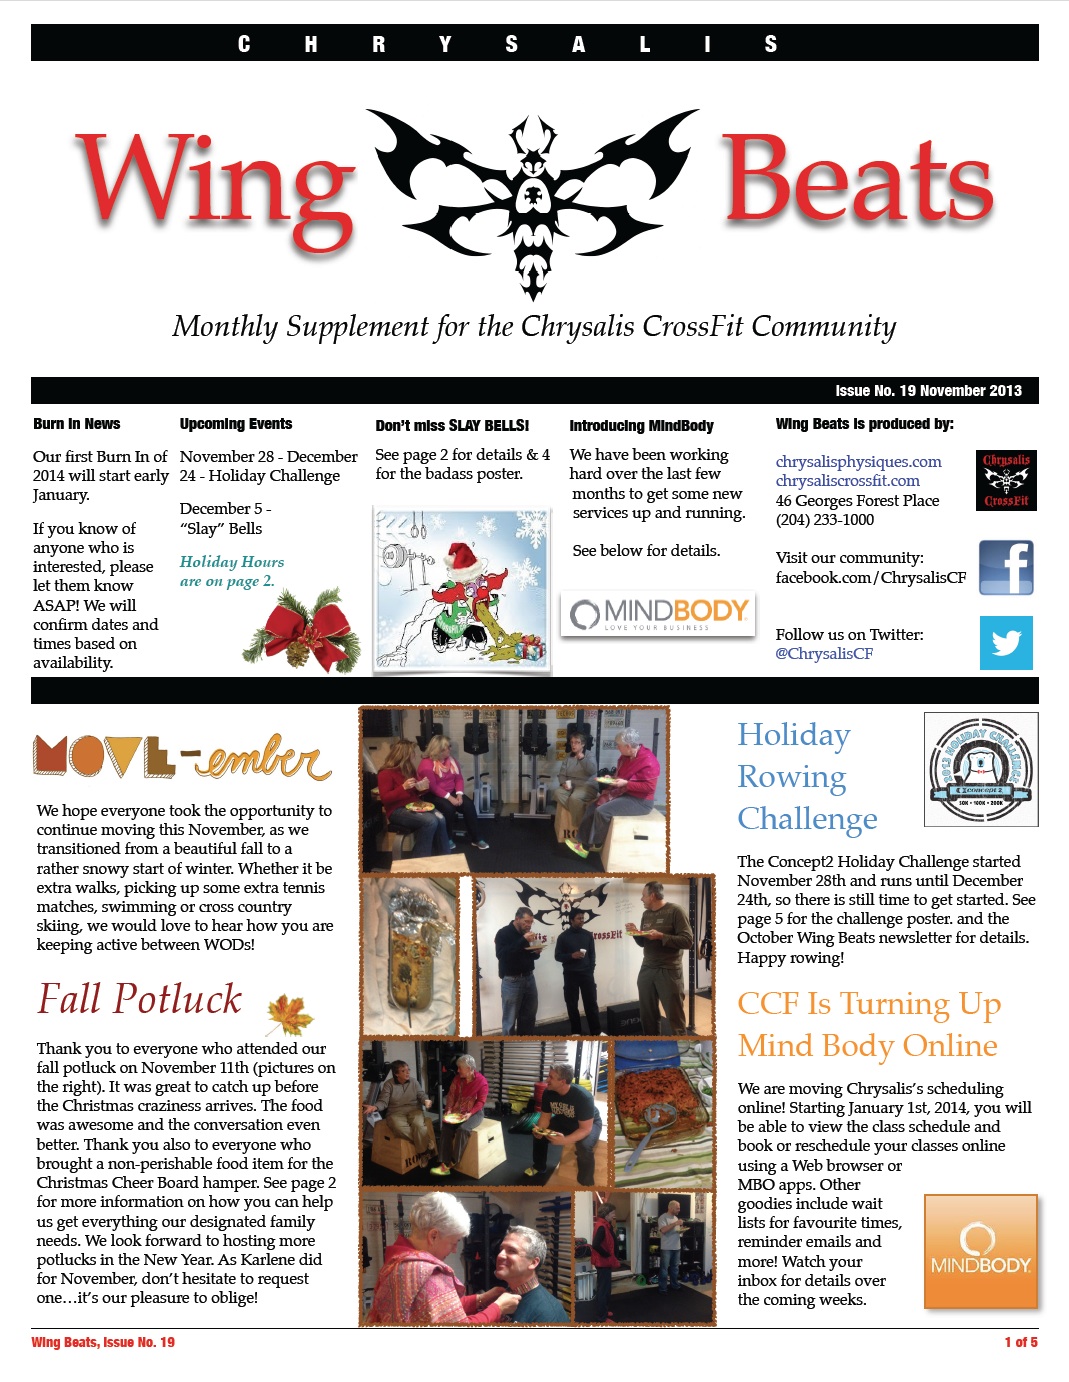 WingBeats Issue #19 - November 2013